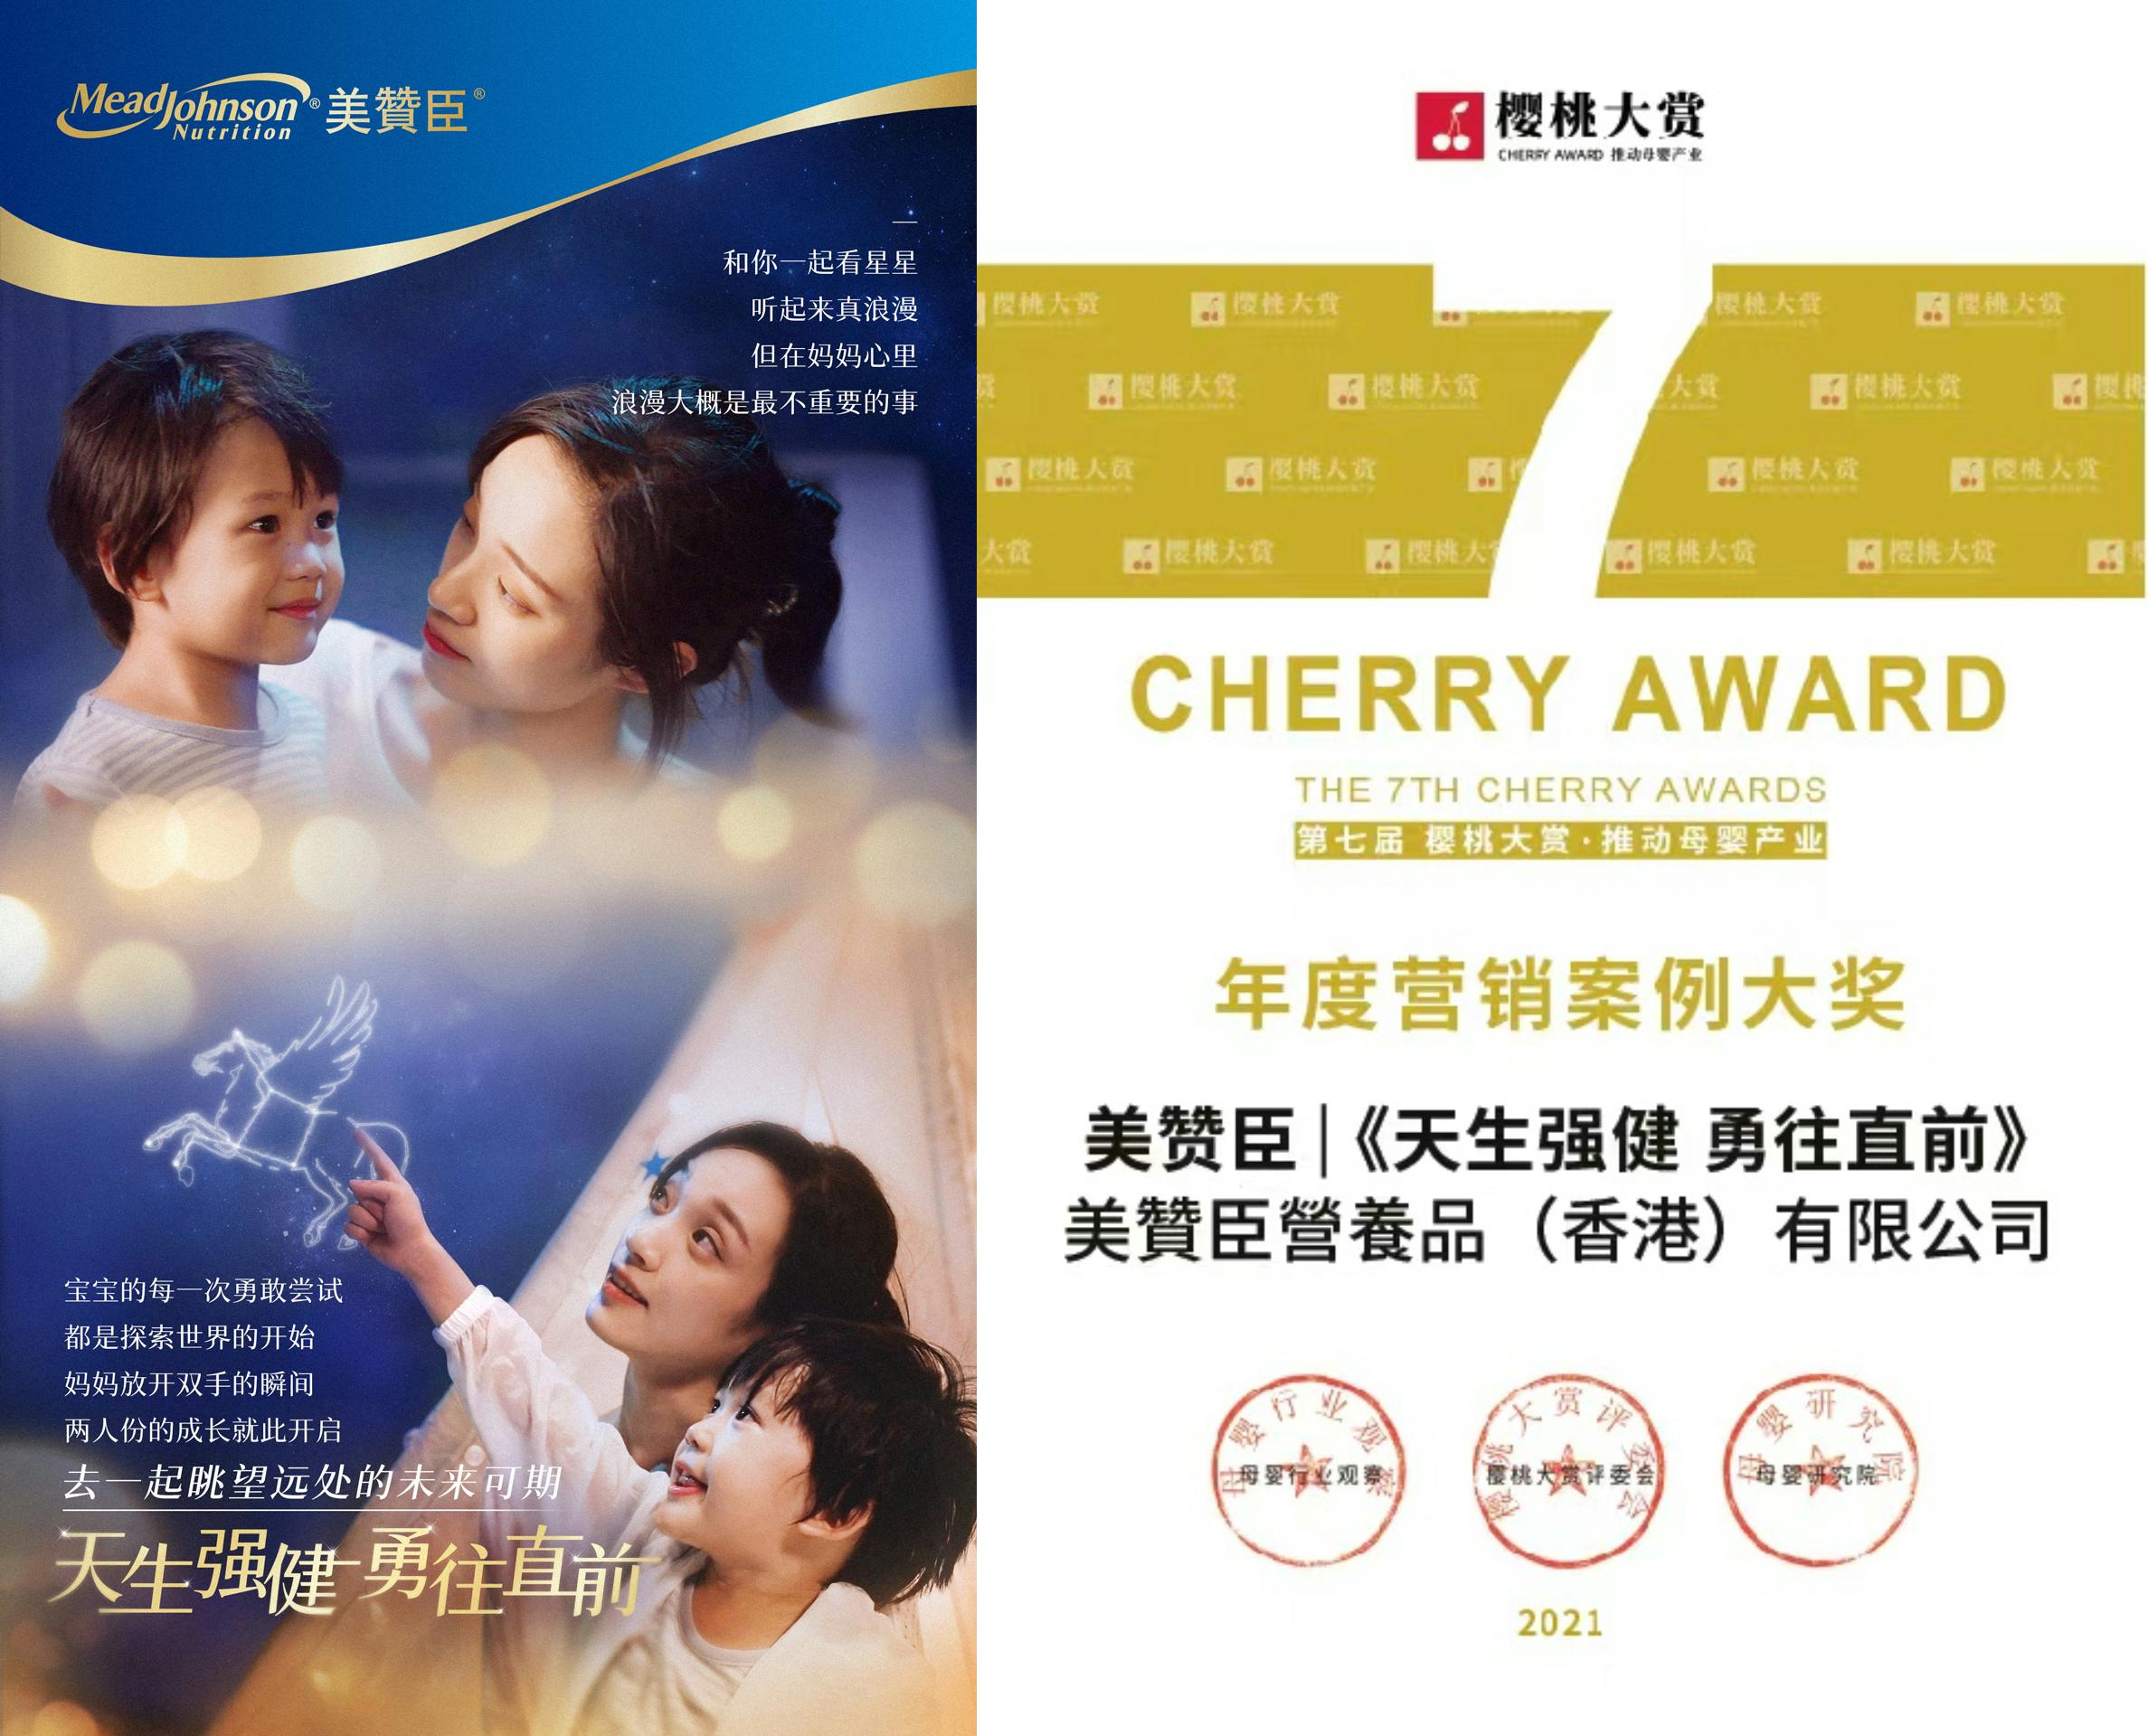 美贊臣營養品（香港）有限公司跨境團隊憑《天生強健，勇往直前》行銷戰略(圖左)於“2021第七屆未來母嬰大會暨櫻桃大賞年度盛典” 榮獲“年度行銷案例大獎”(圖右)。